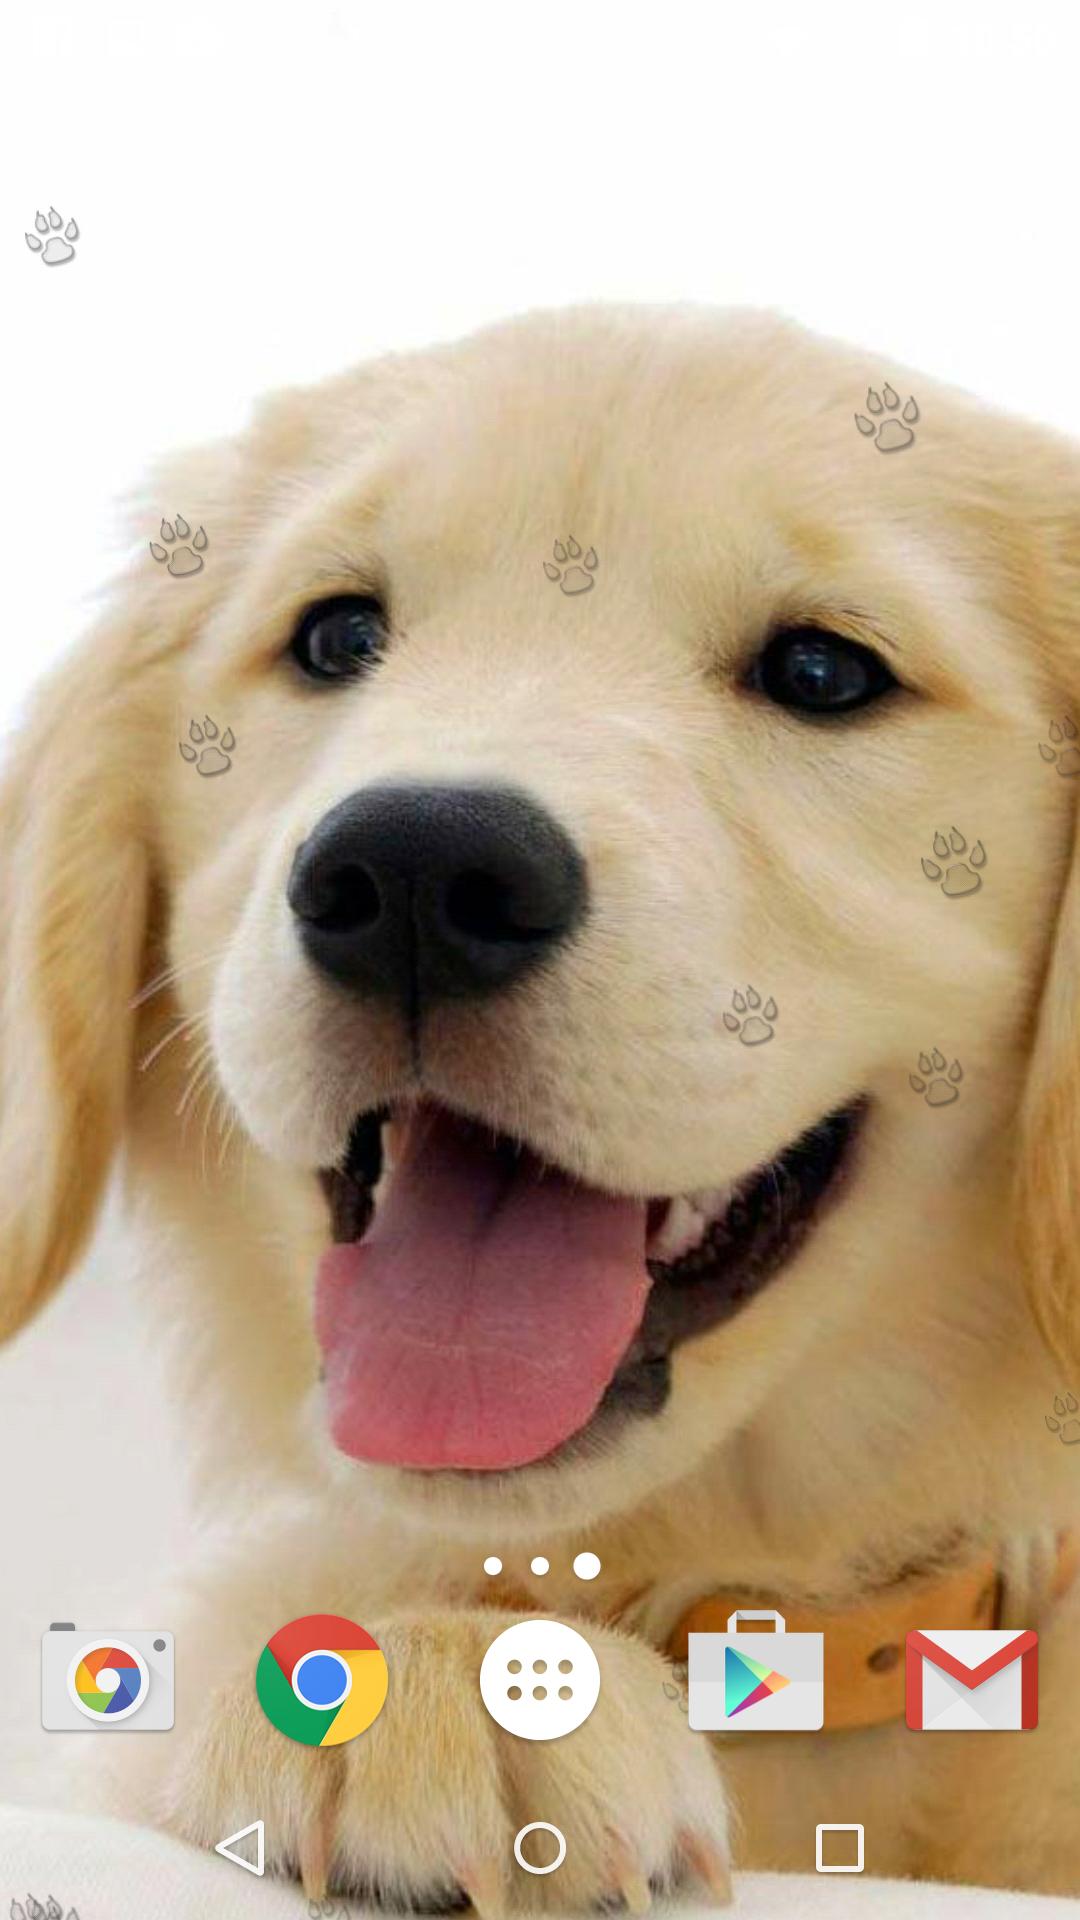 Android 用の かわいい子犬 ライブ壁紙 Apk をダウンロード